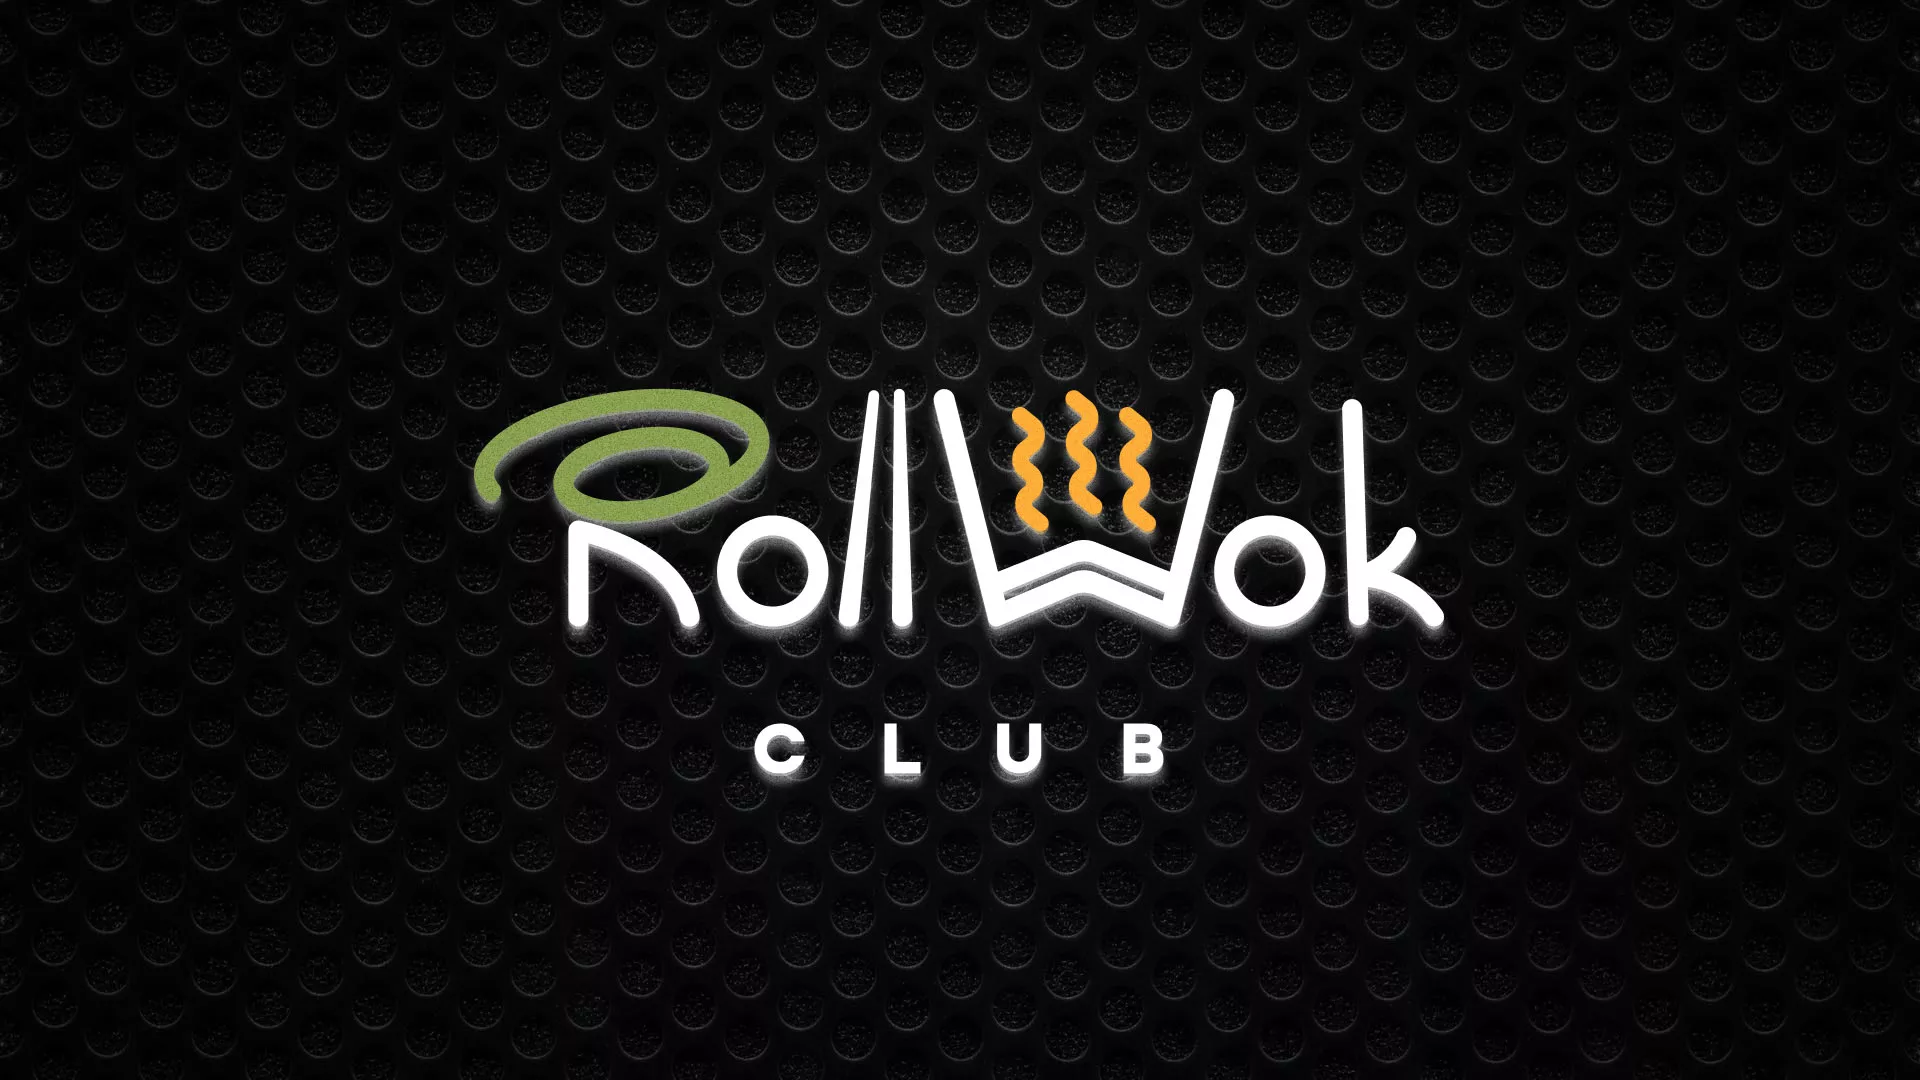 Брендирование торговых точек суши-бара «Roll Wok Club» в Закаменске